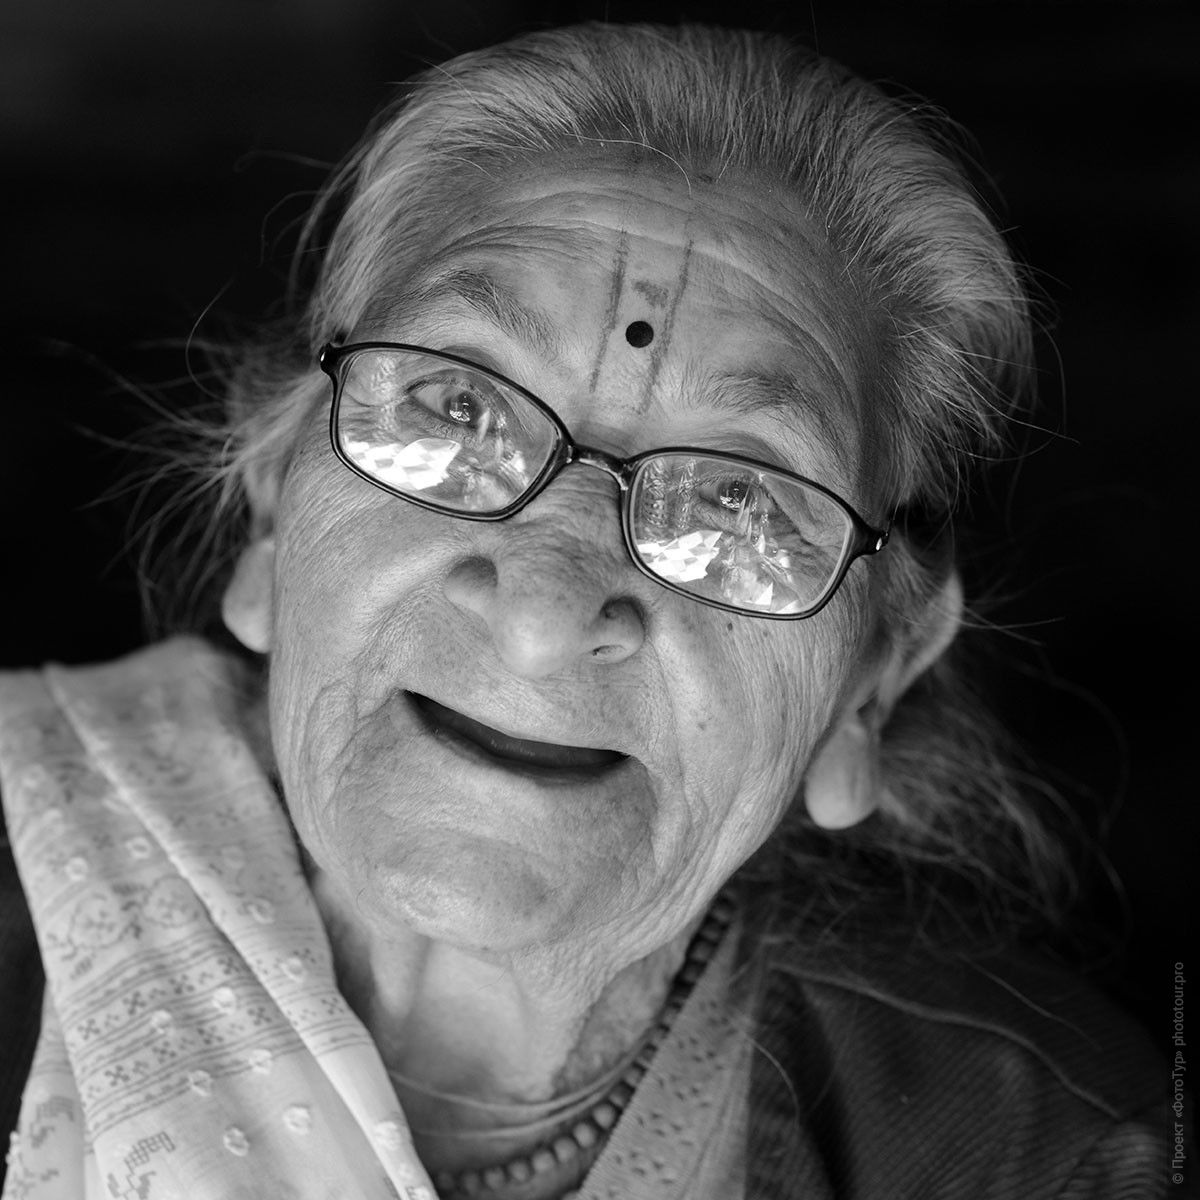 Очки. Бабушка из Матхуры. Фотографии людей из Индии. Фототур на праздник Холи в Индию.